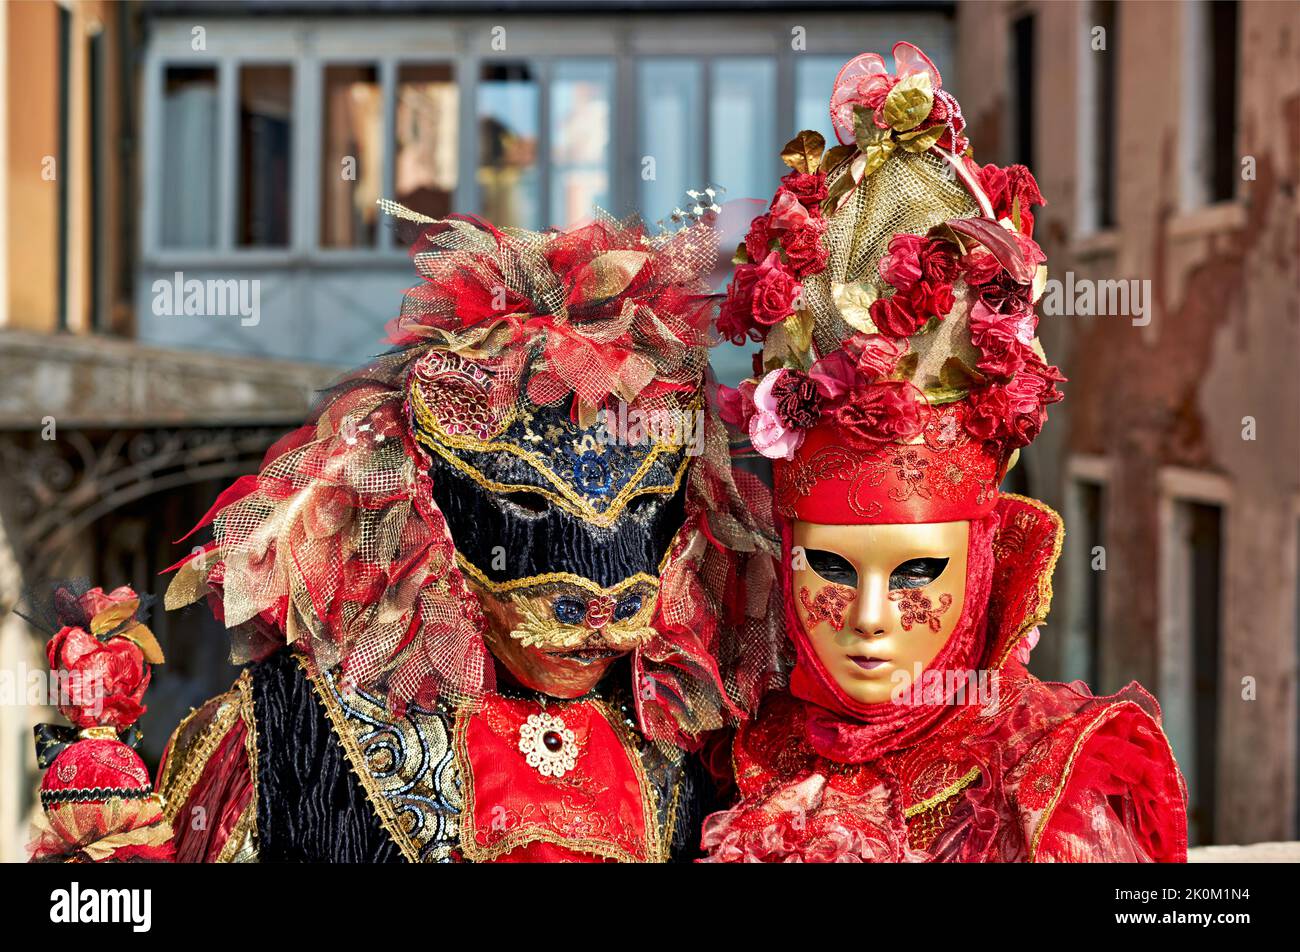 Venice Italy. The Carnival Stock Photo